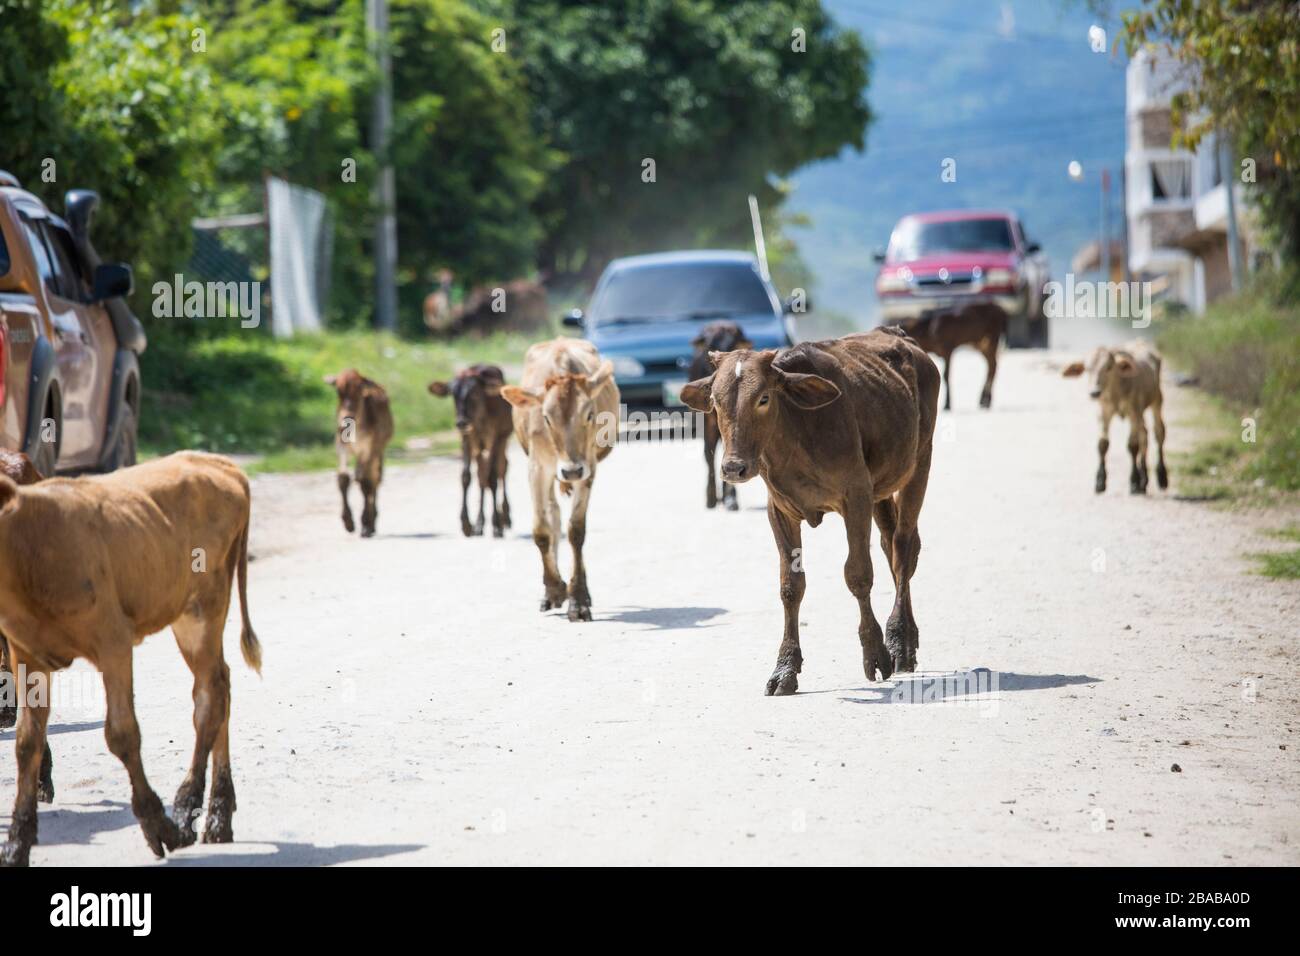 Les vaches se promènent sur la route, bloquant la circulation. Banque D'Images